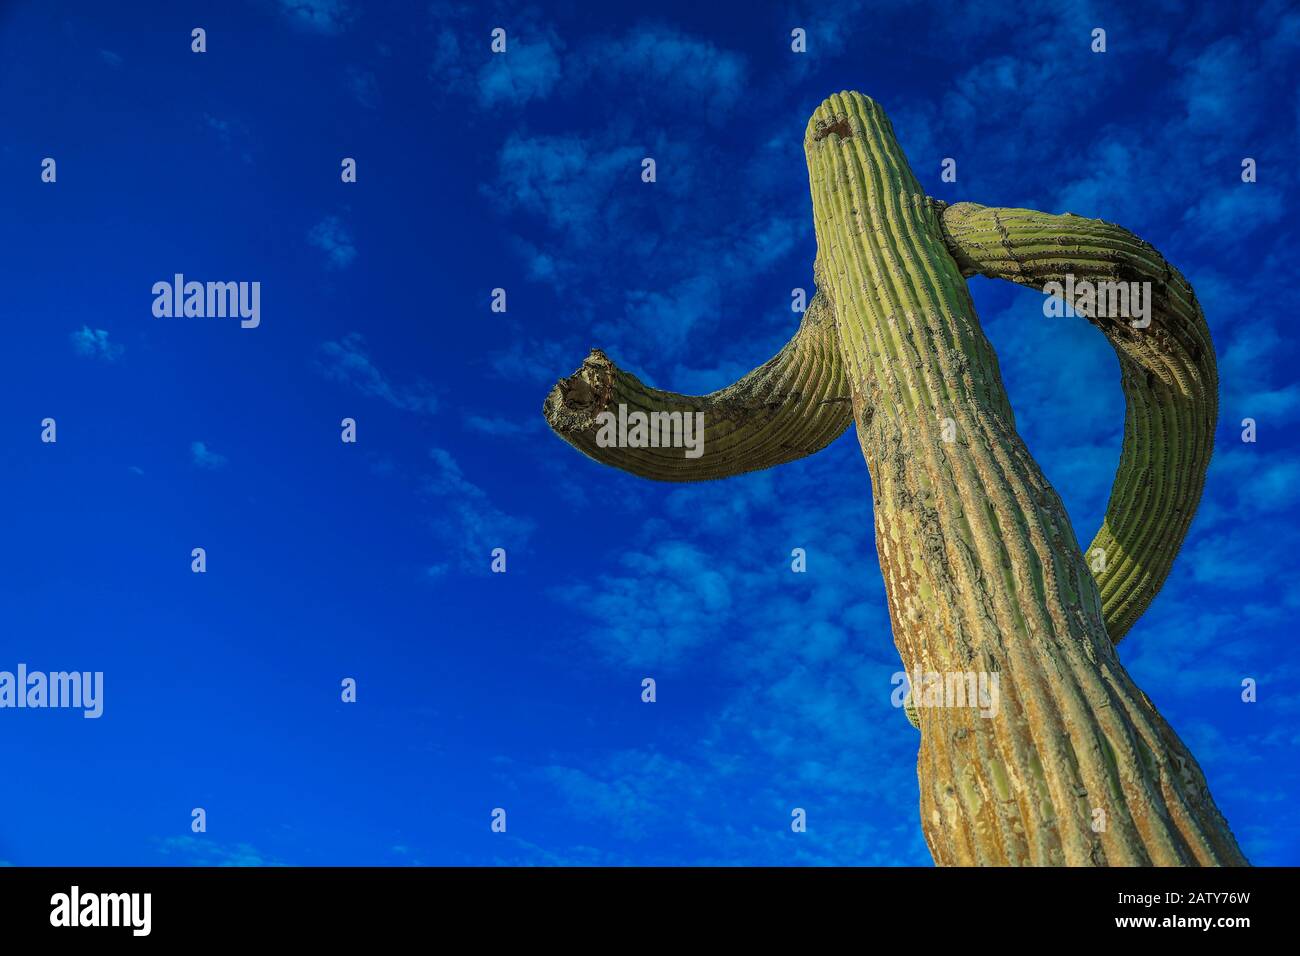 Saguaro or Sahuaro (Carnegiea gigantea) shaped like a man. Typical columnar cactus from the Sonoran Desert, Mexico. monotípicoc is a species of greater size among the cacti .... KEY WORDS: surreal, alien, extraterrestrial, strange, shape, malformation, twisted, tree brazes, bony thorns, rare, twisted, crooked, crooked.  saguaro o sahuaro (Carnegiea gigantea) con forma de un hombre. cactus columnar típico del Desierto de Sonora, Mexico. monotípicoc es una especies de mayor porte entre las cactáceas....PALABRAS CLAVES: surreal, alienigena, extraterreste, extraño, forma, malformacion, retorcido, Stock Photo